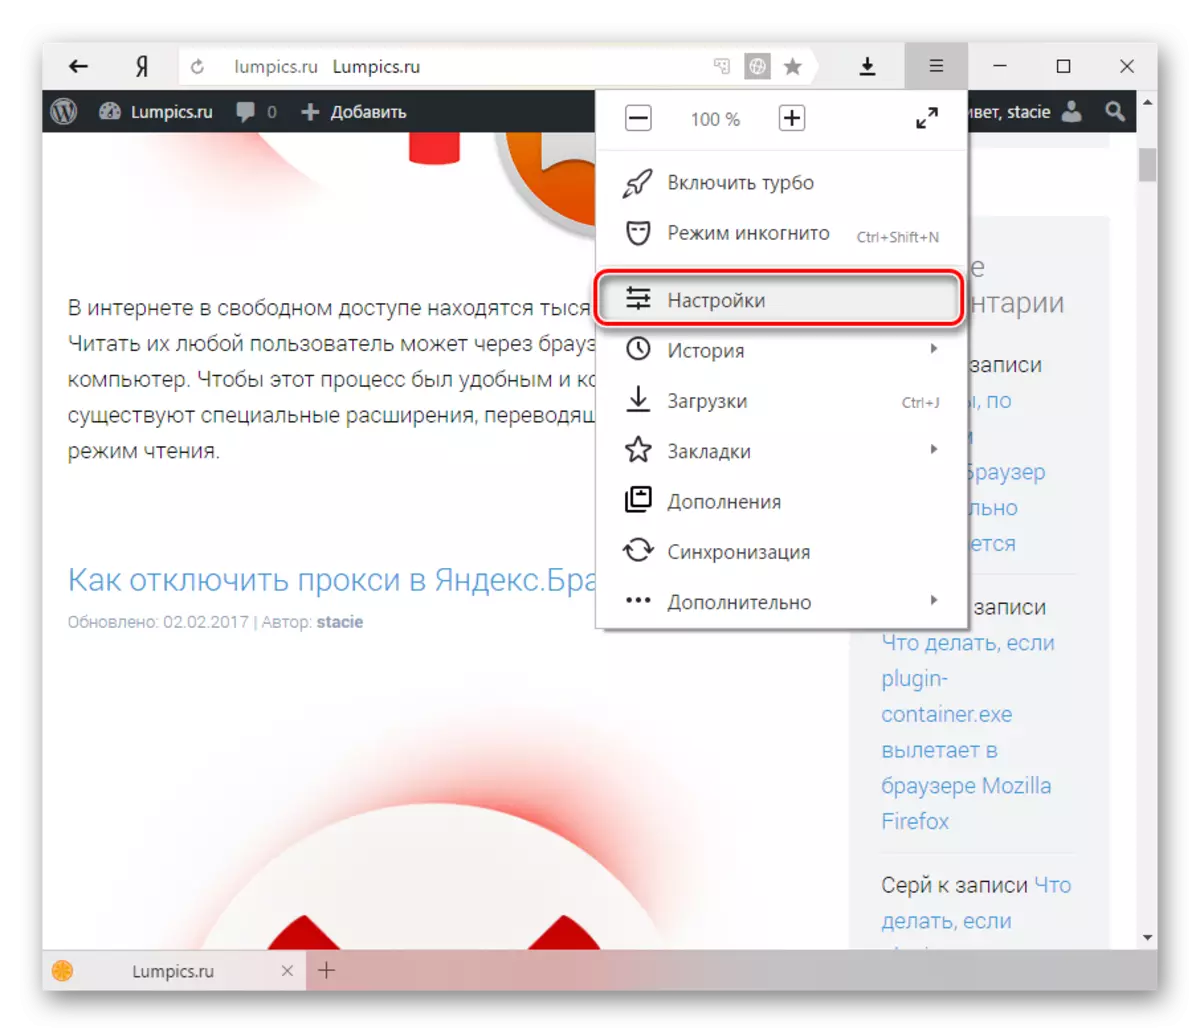 Configuración Yandex.bauser.